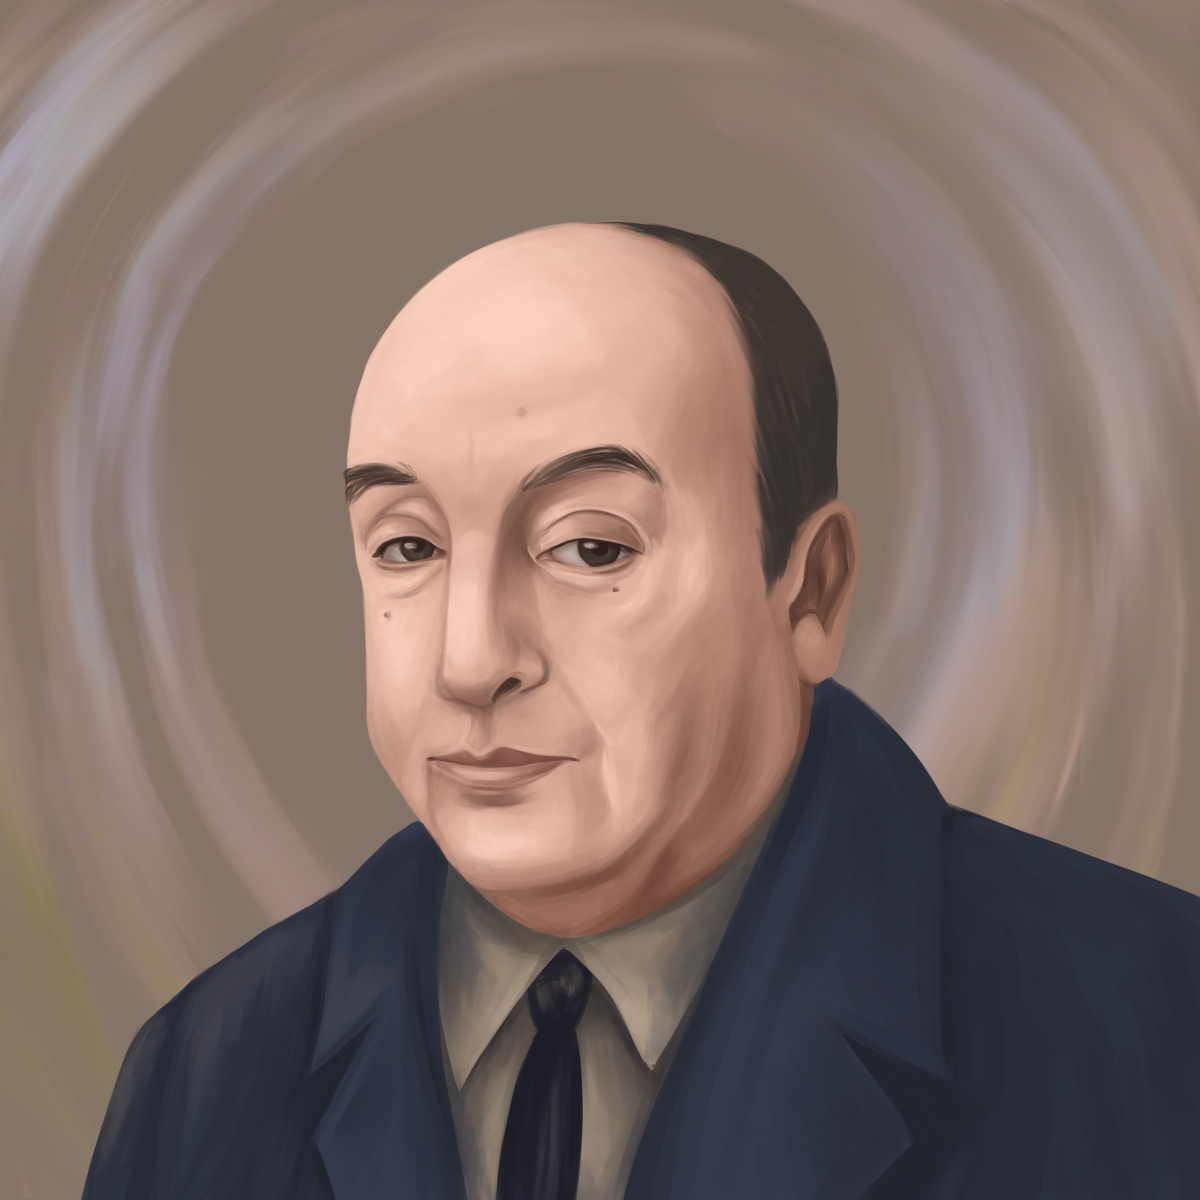 Pablo Neruda Portrait